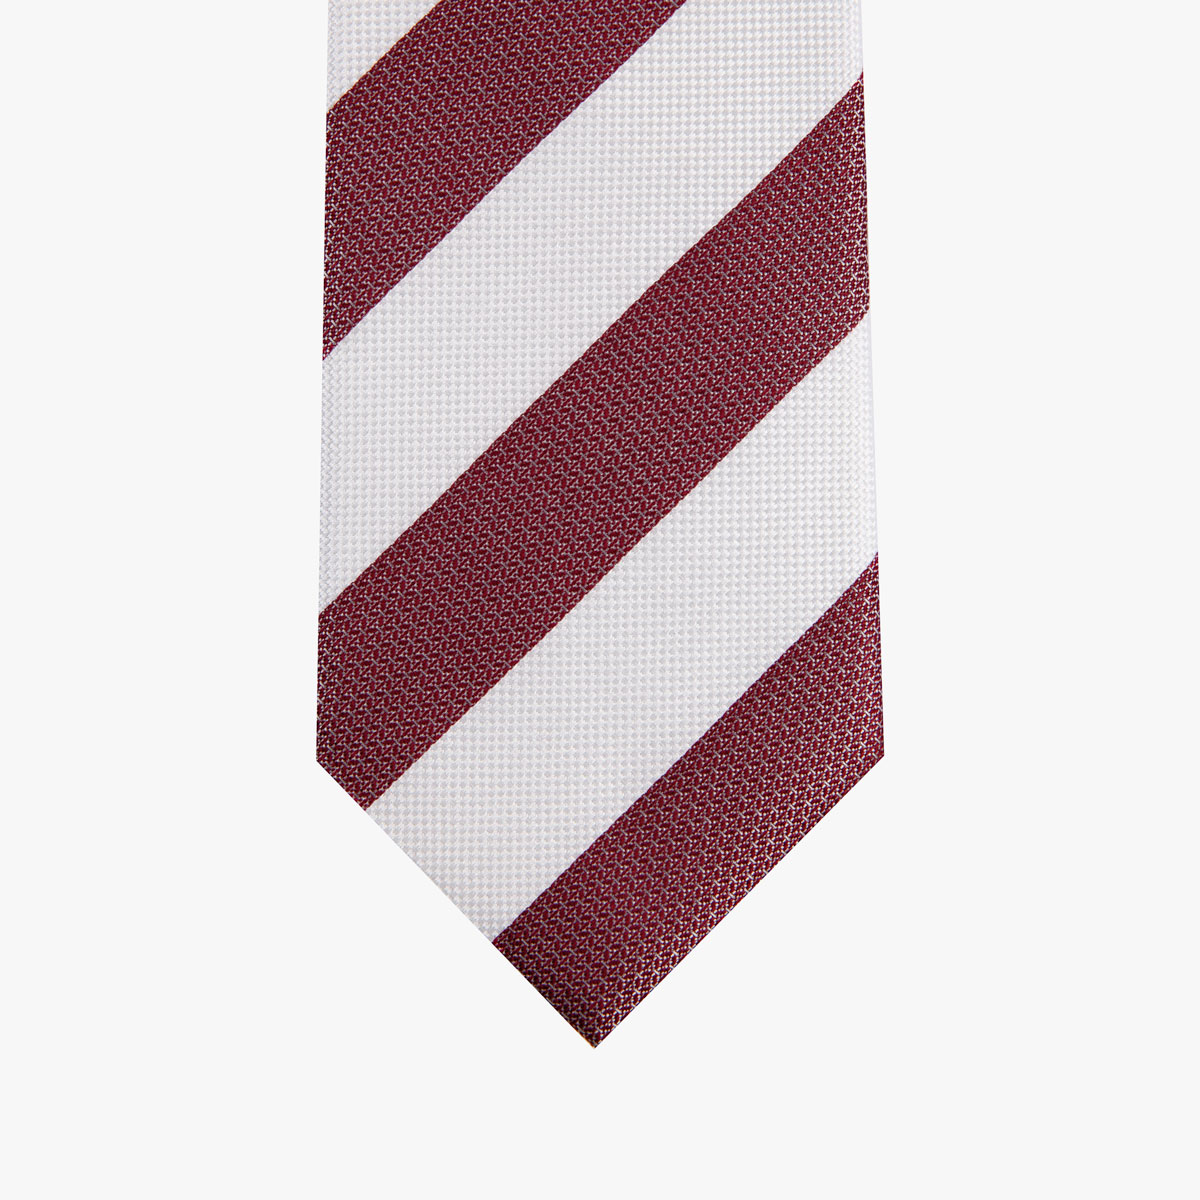 Krawatte glatt mit breiten Streifen in rot und weiß